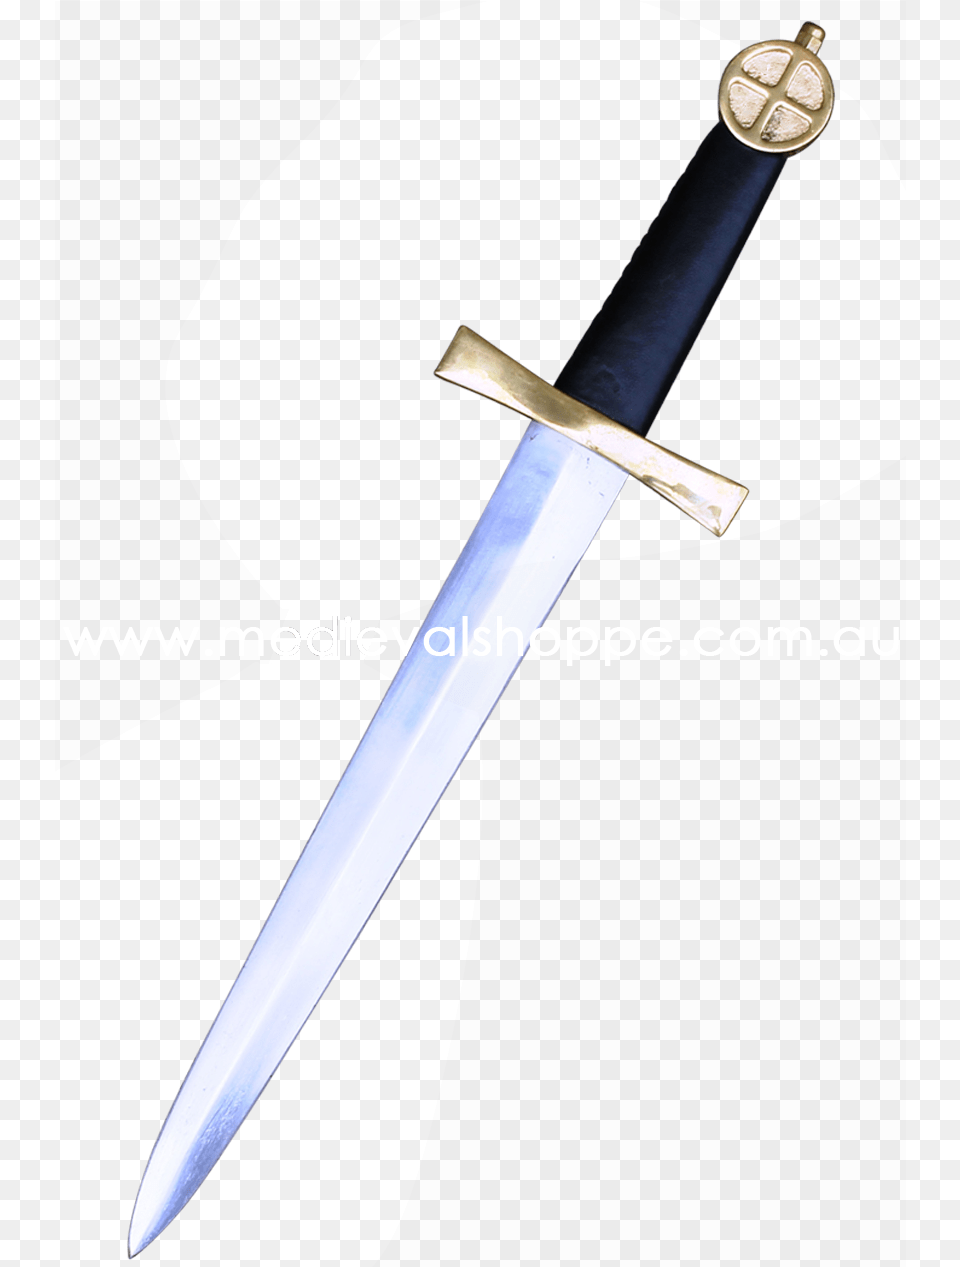 Sabre, Blade, Dagger, Knife, Sword Free Transparent Png